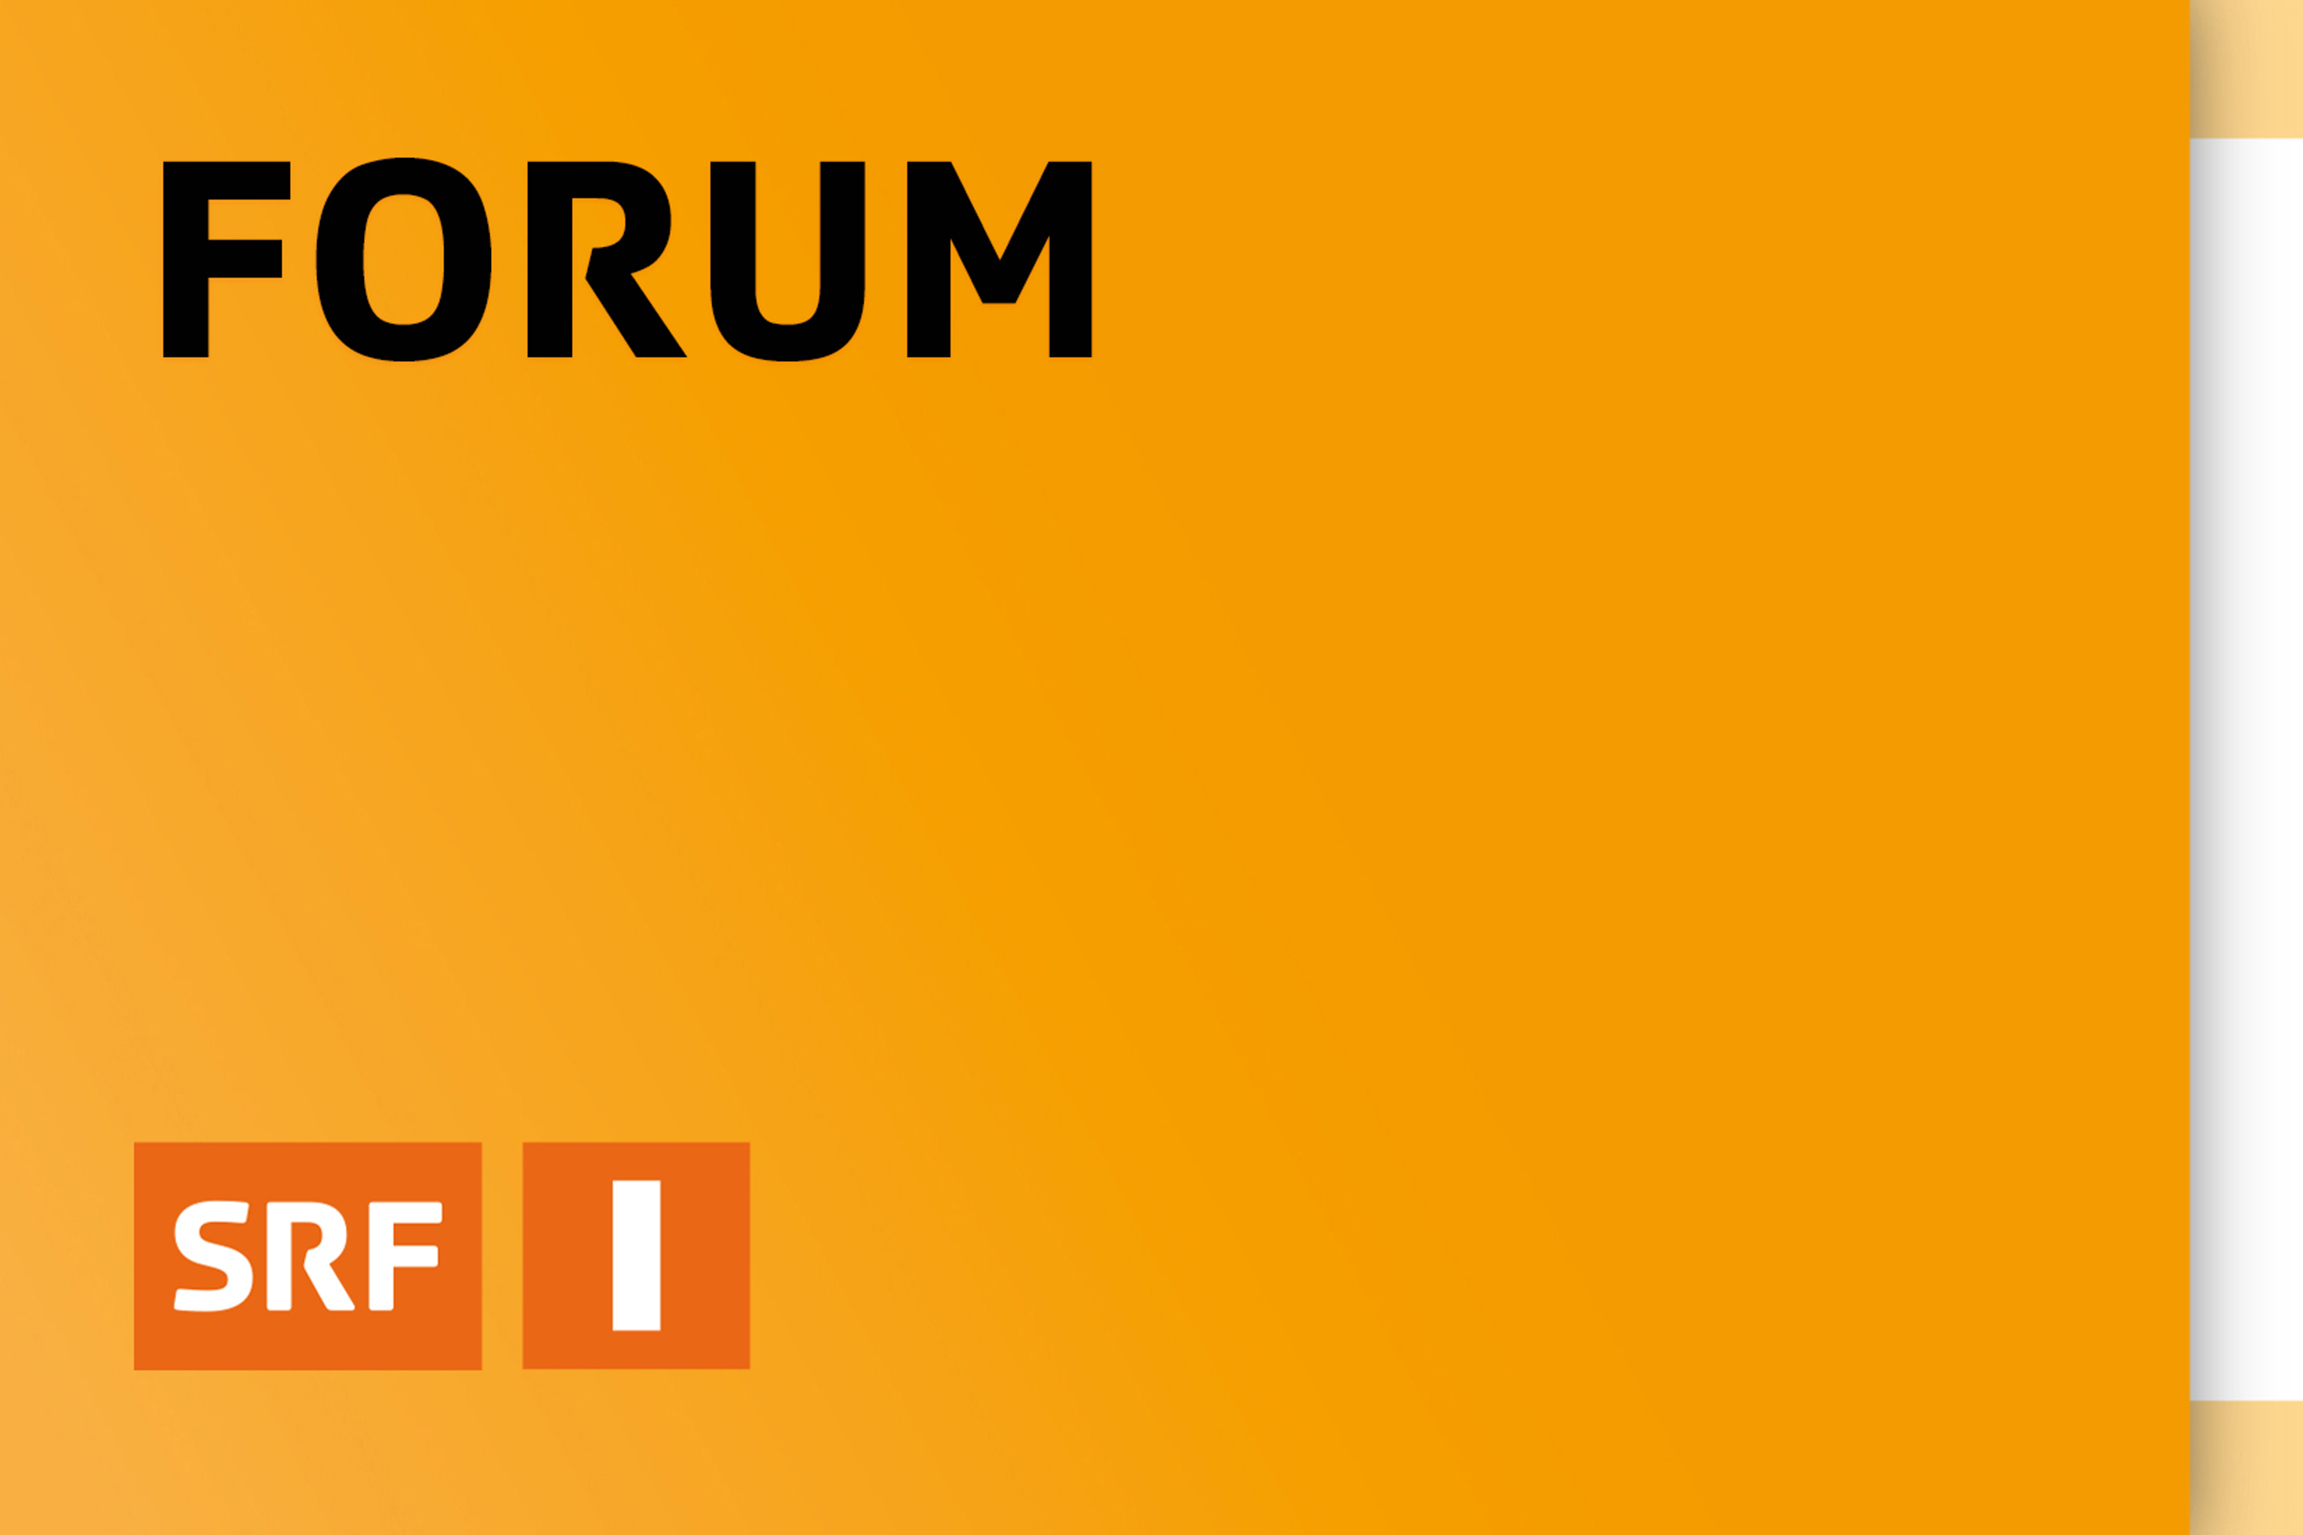 Radio SRF 1 Forum Logo 2022 Copyright: SRF